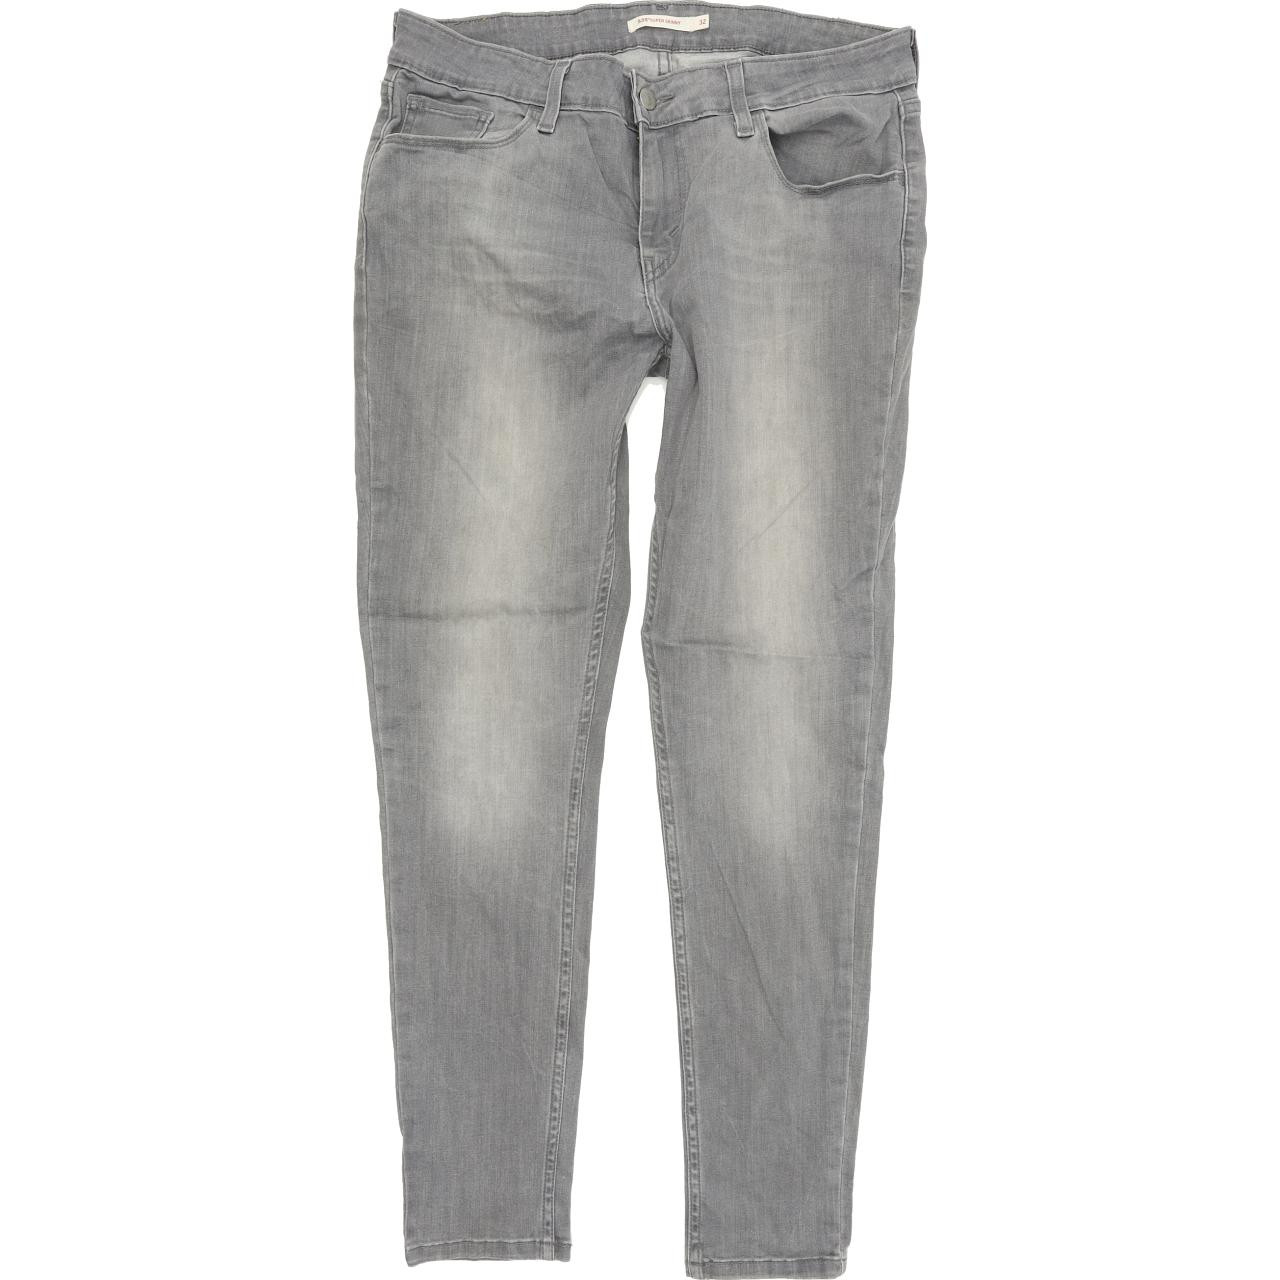 Levi's 535 Women Grey Skinny Slim Stretch Jeans W32 L30 | Fabb Fashion